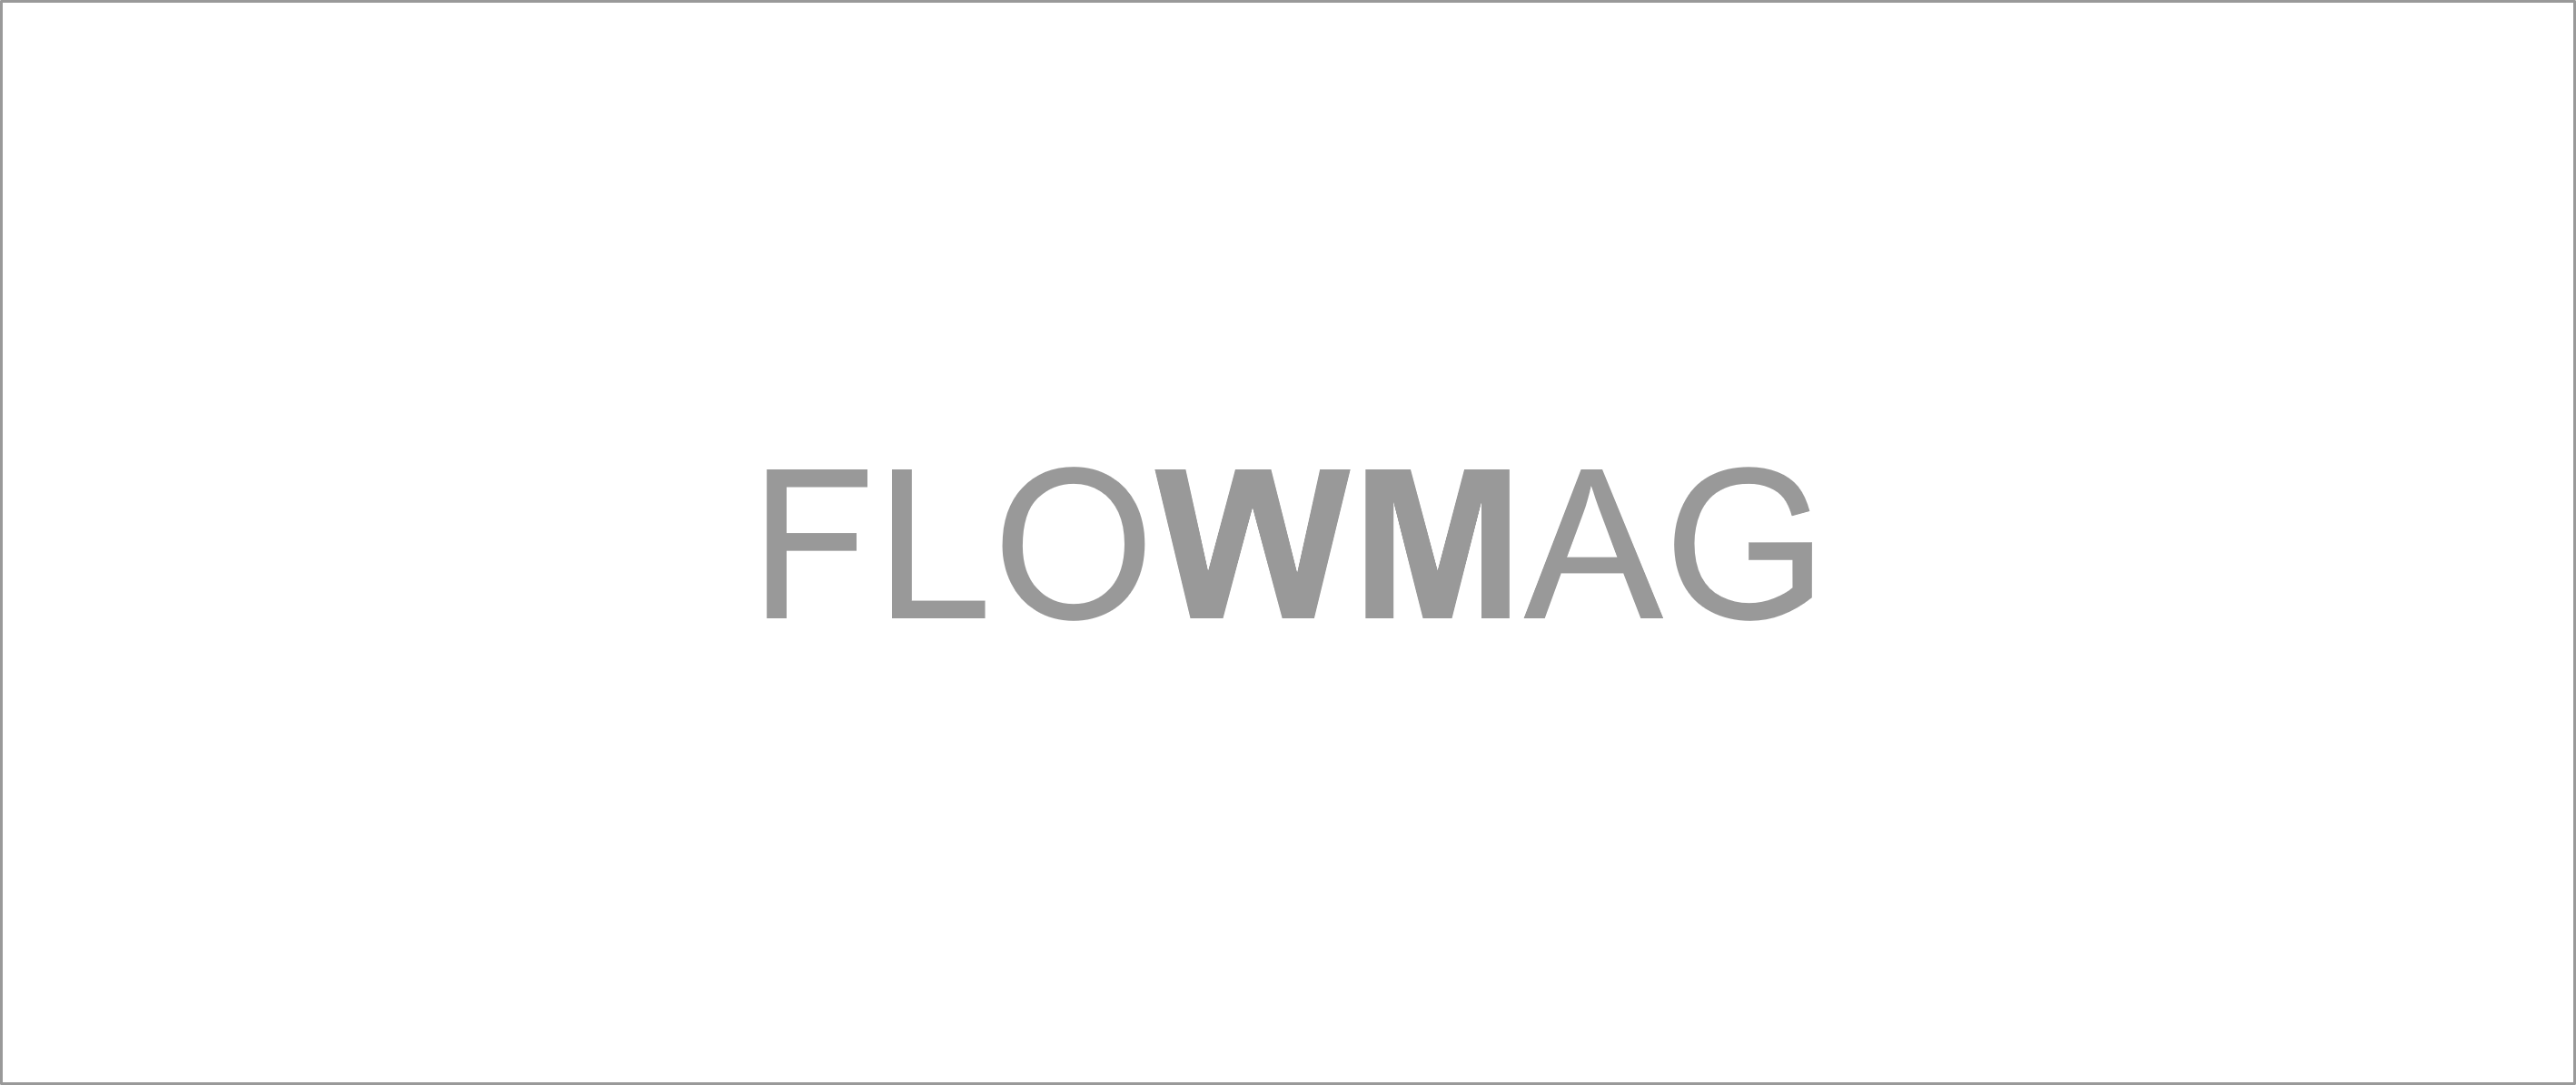 FlowMag